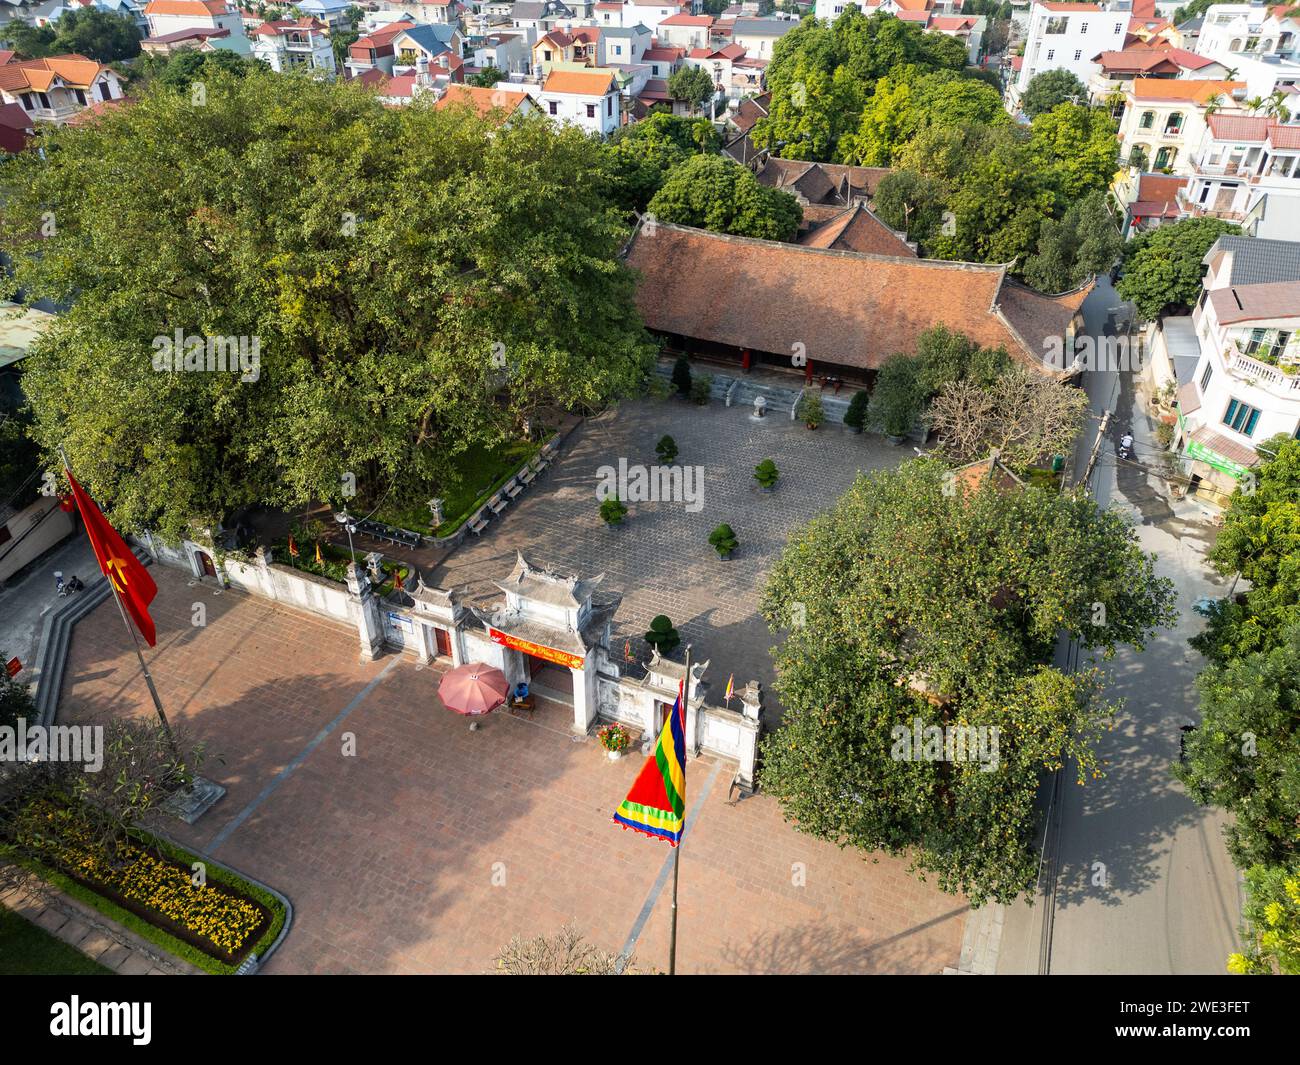 Baoshan Temple, Chùa Bảo Sơn, Co Loa Citadel or Di tích Thành Cổ Loa, Dong Anh, Hanoi, Vietnam Stock Photo